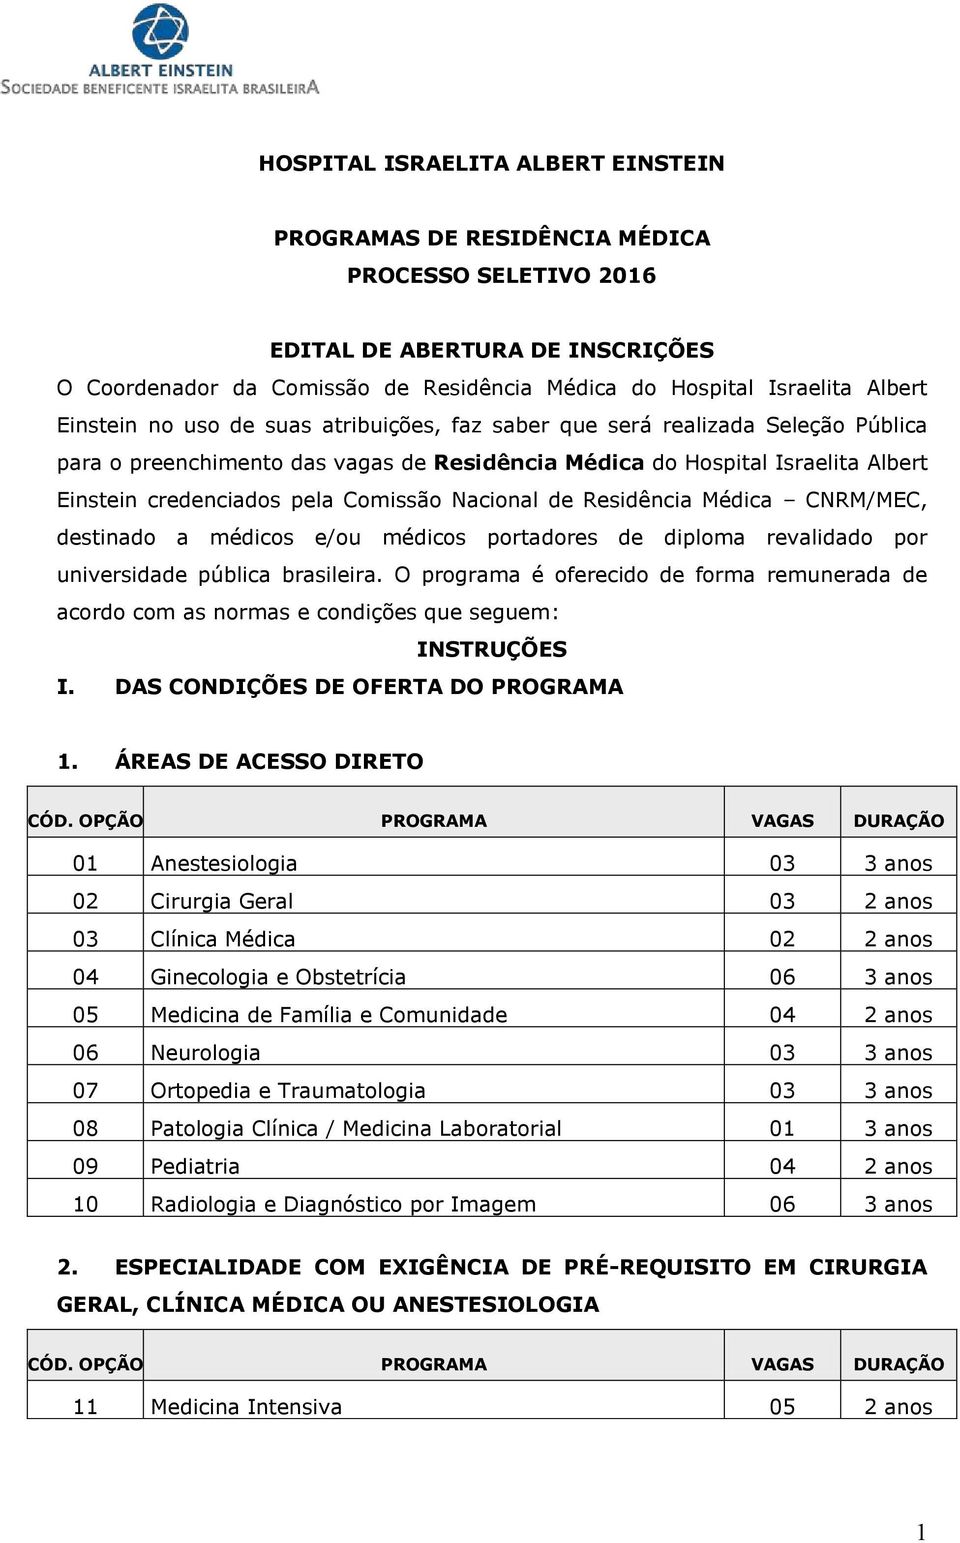 Nacional de Residência Médica CNRM/MEC, destinado a médicos médicos portadores de diploma revalidado por universidade pública brasileira.